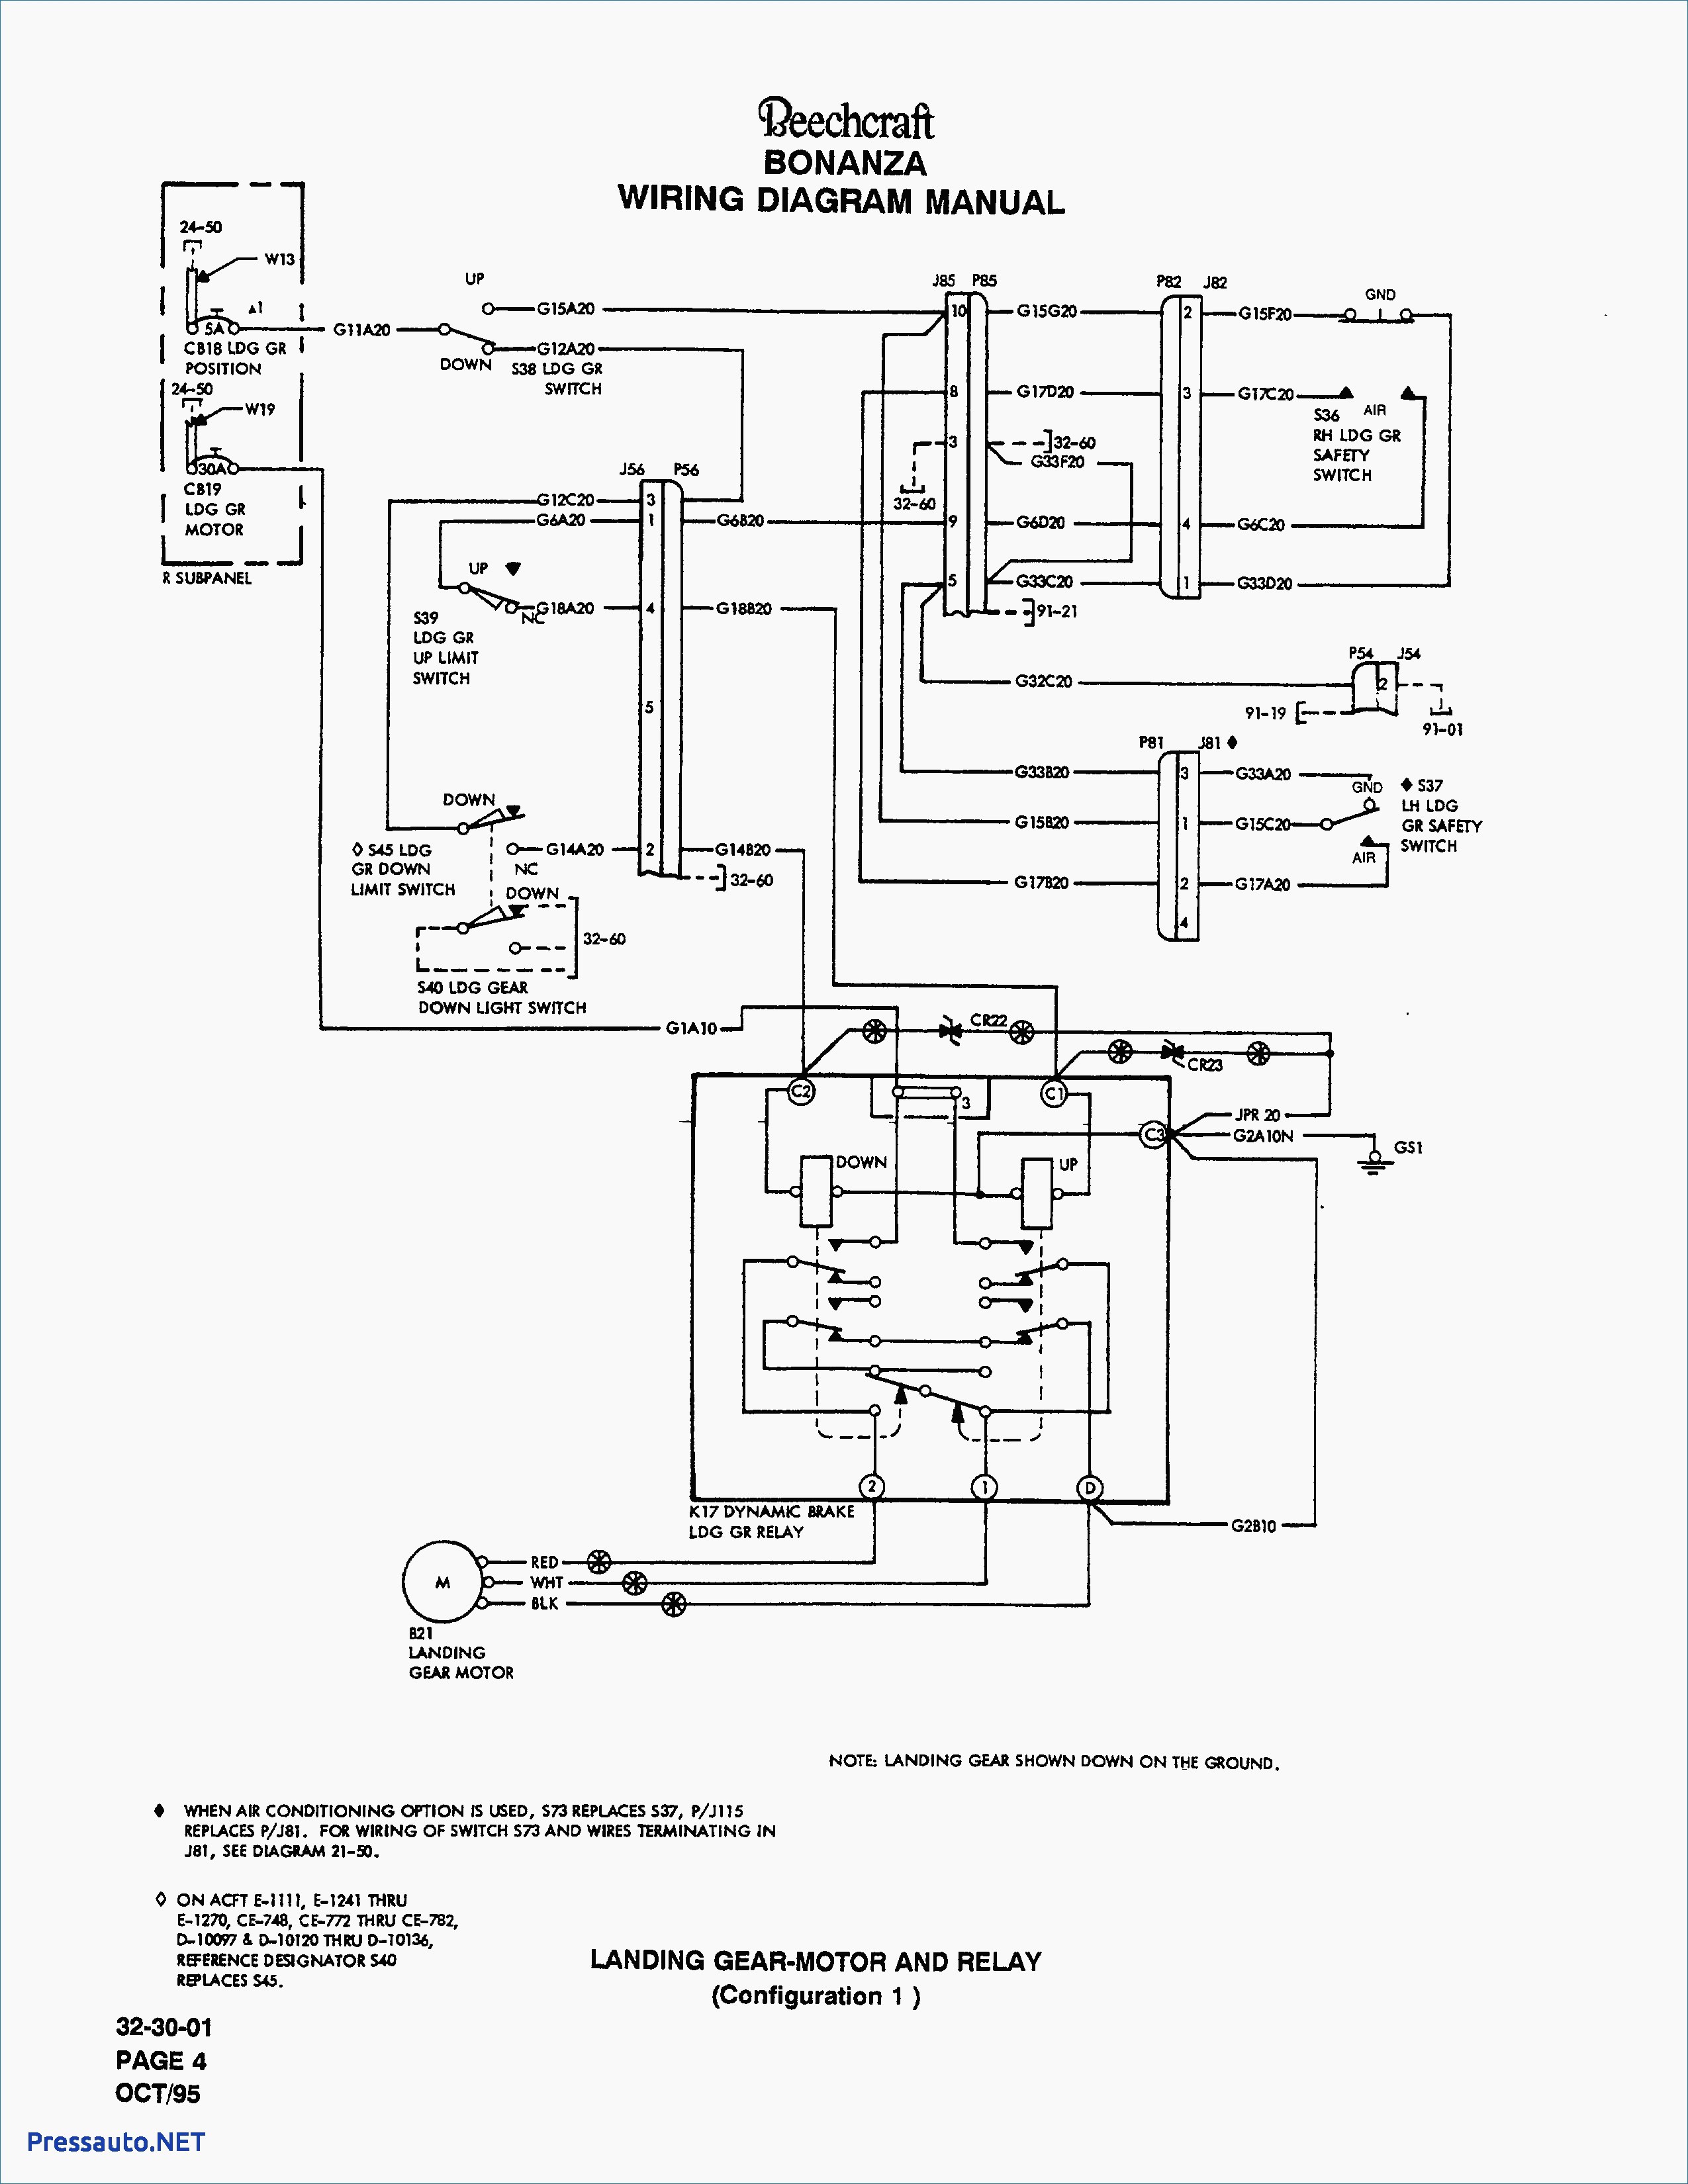 Fisher Wiring Diagram Wiring Diagram Sno Way Joystick Wiring Diagram Joystick Wiring Diagram